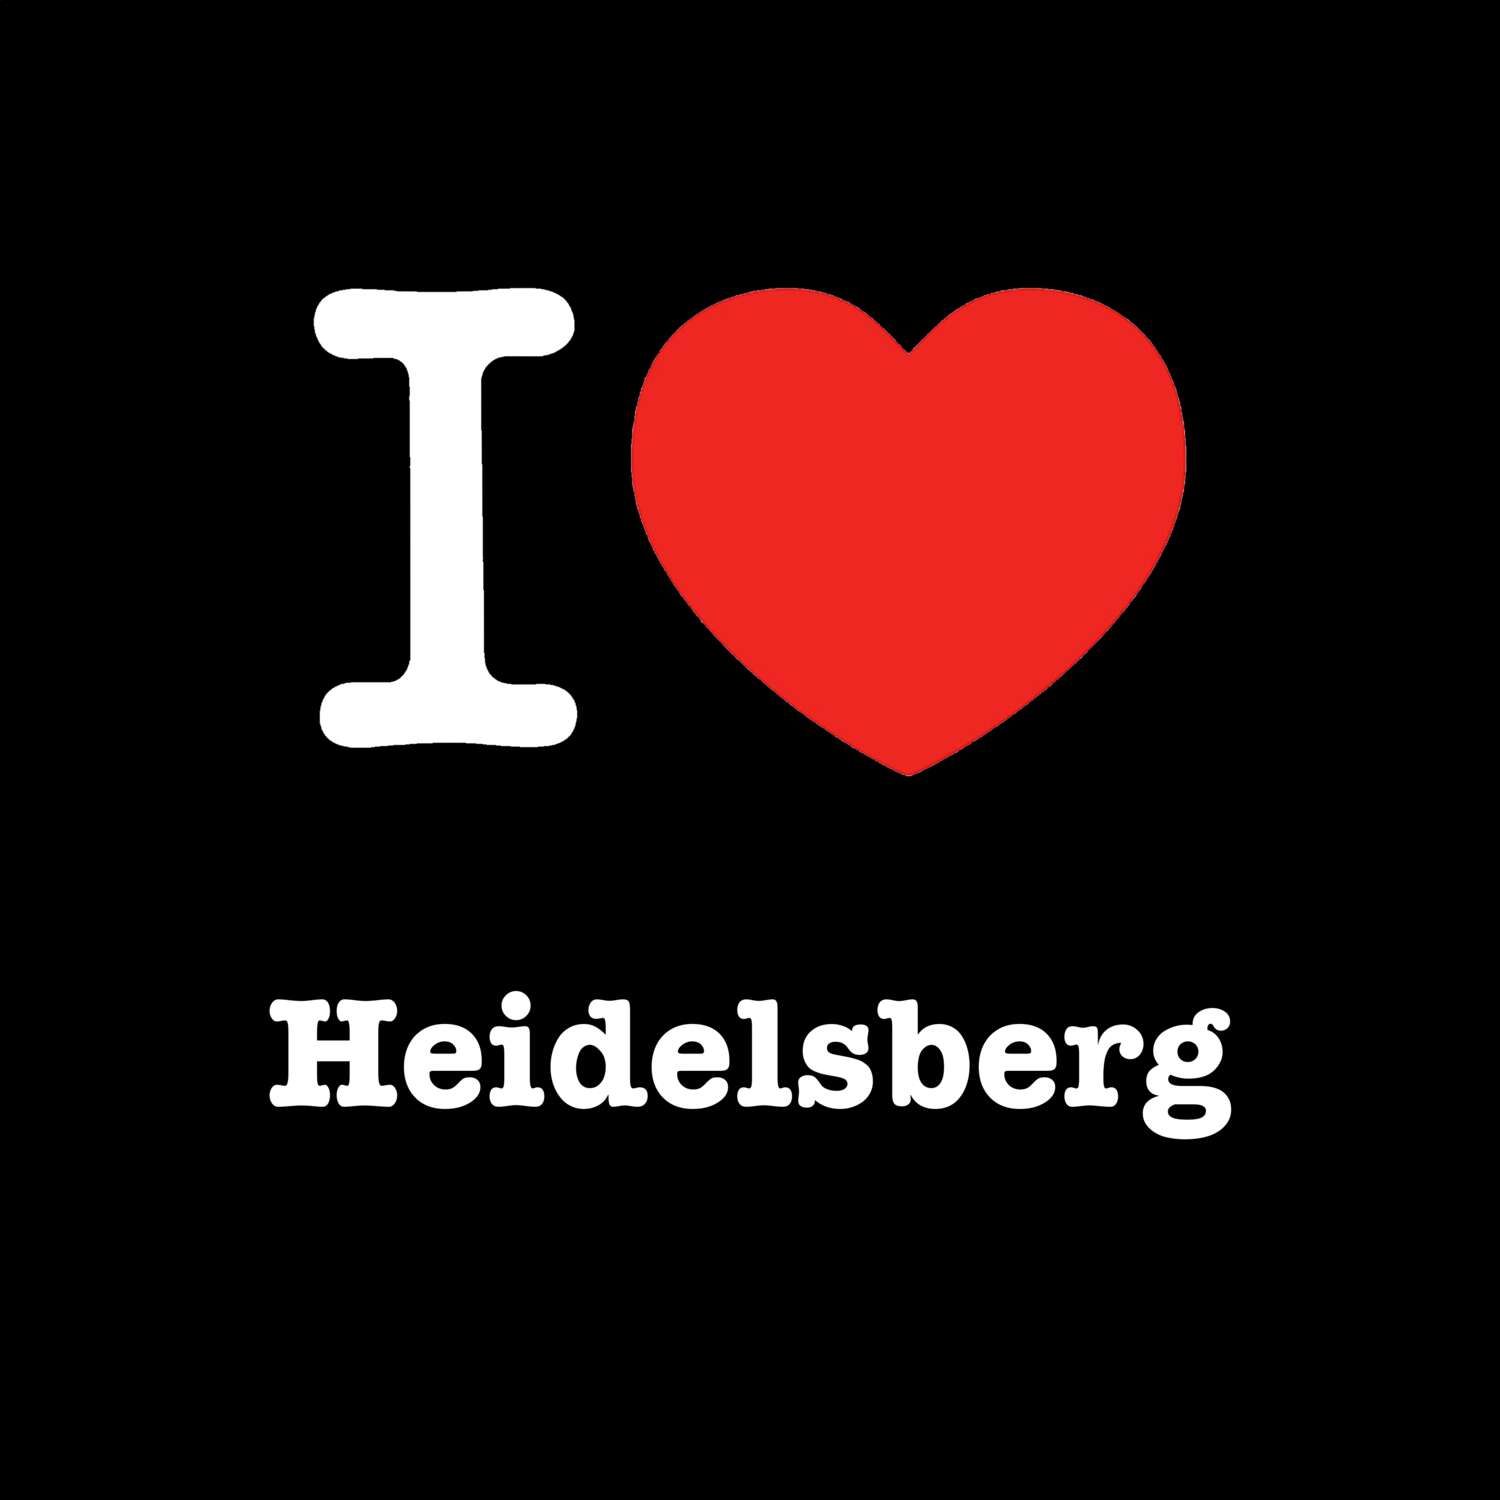 Heidelsberg T-Shirt »I love«